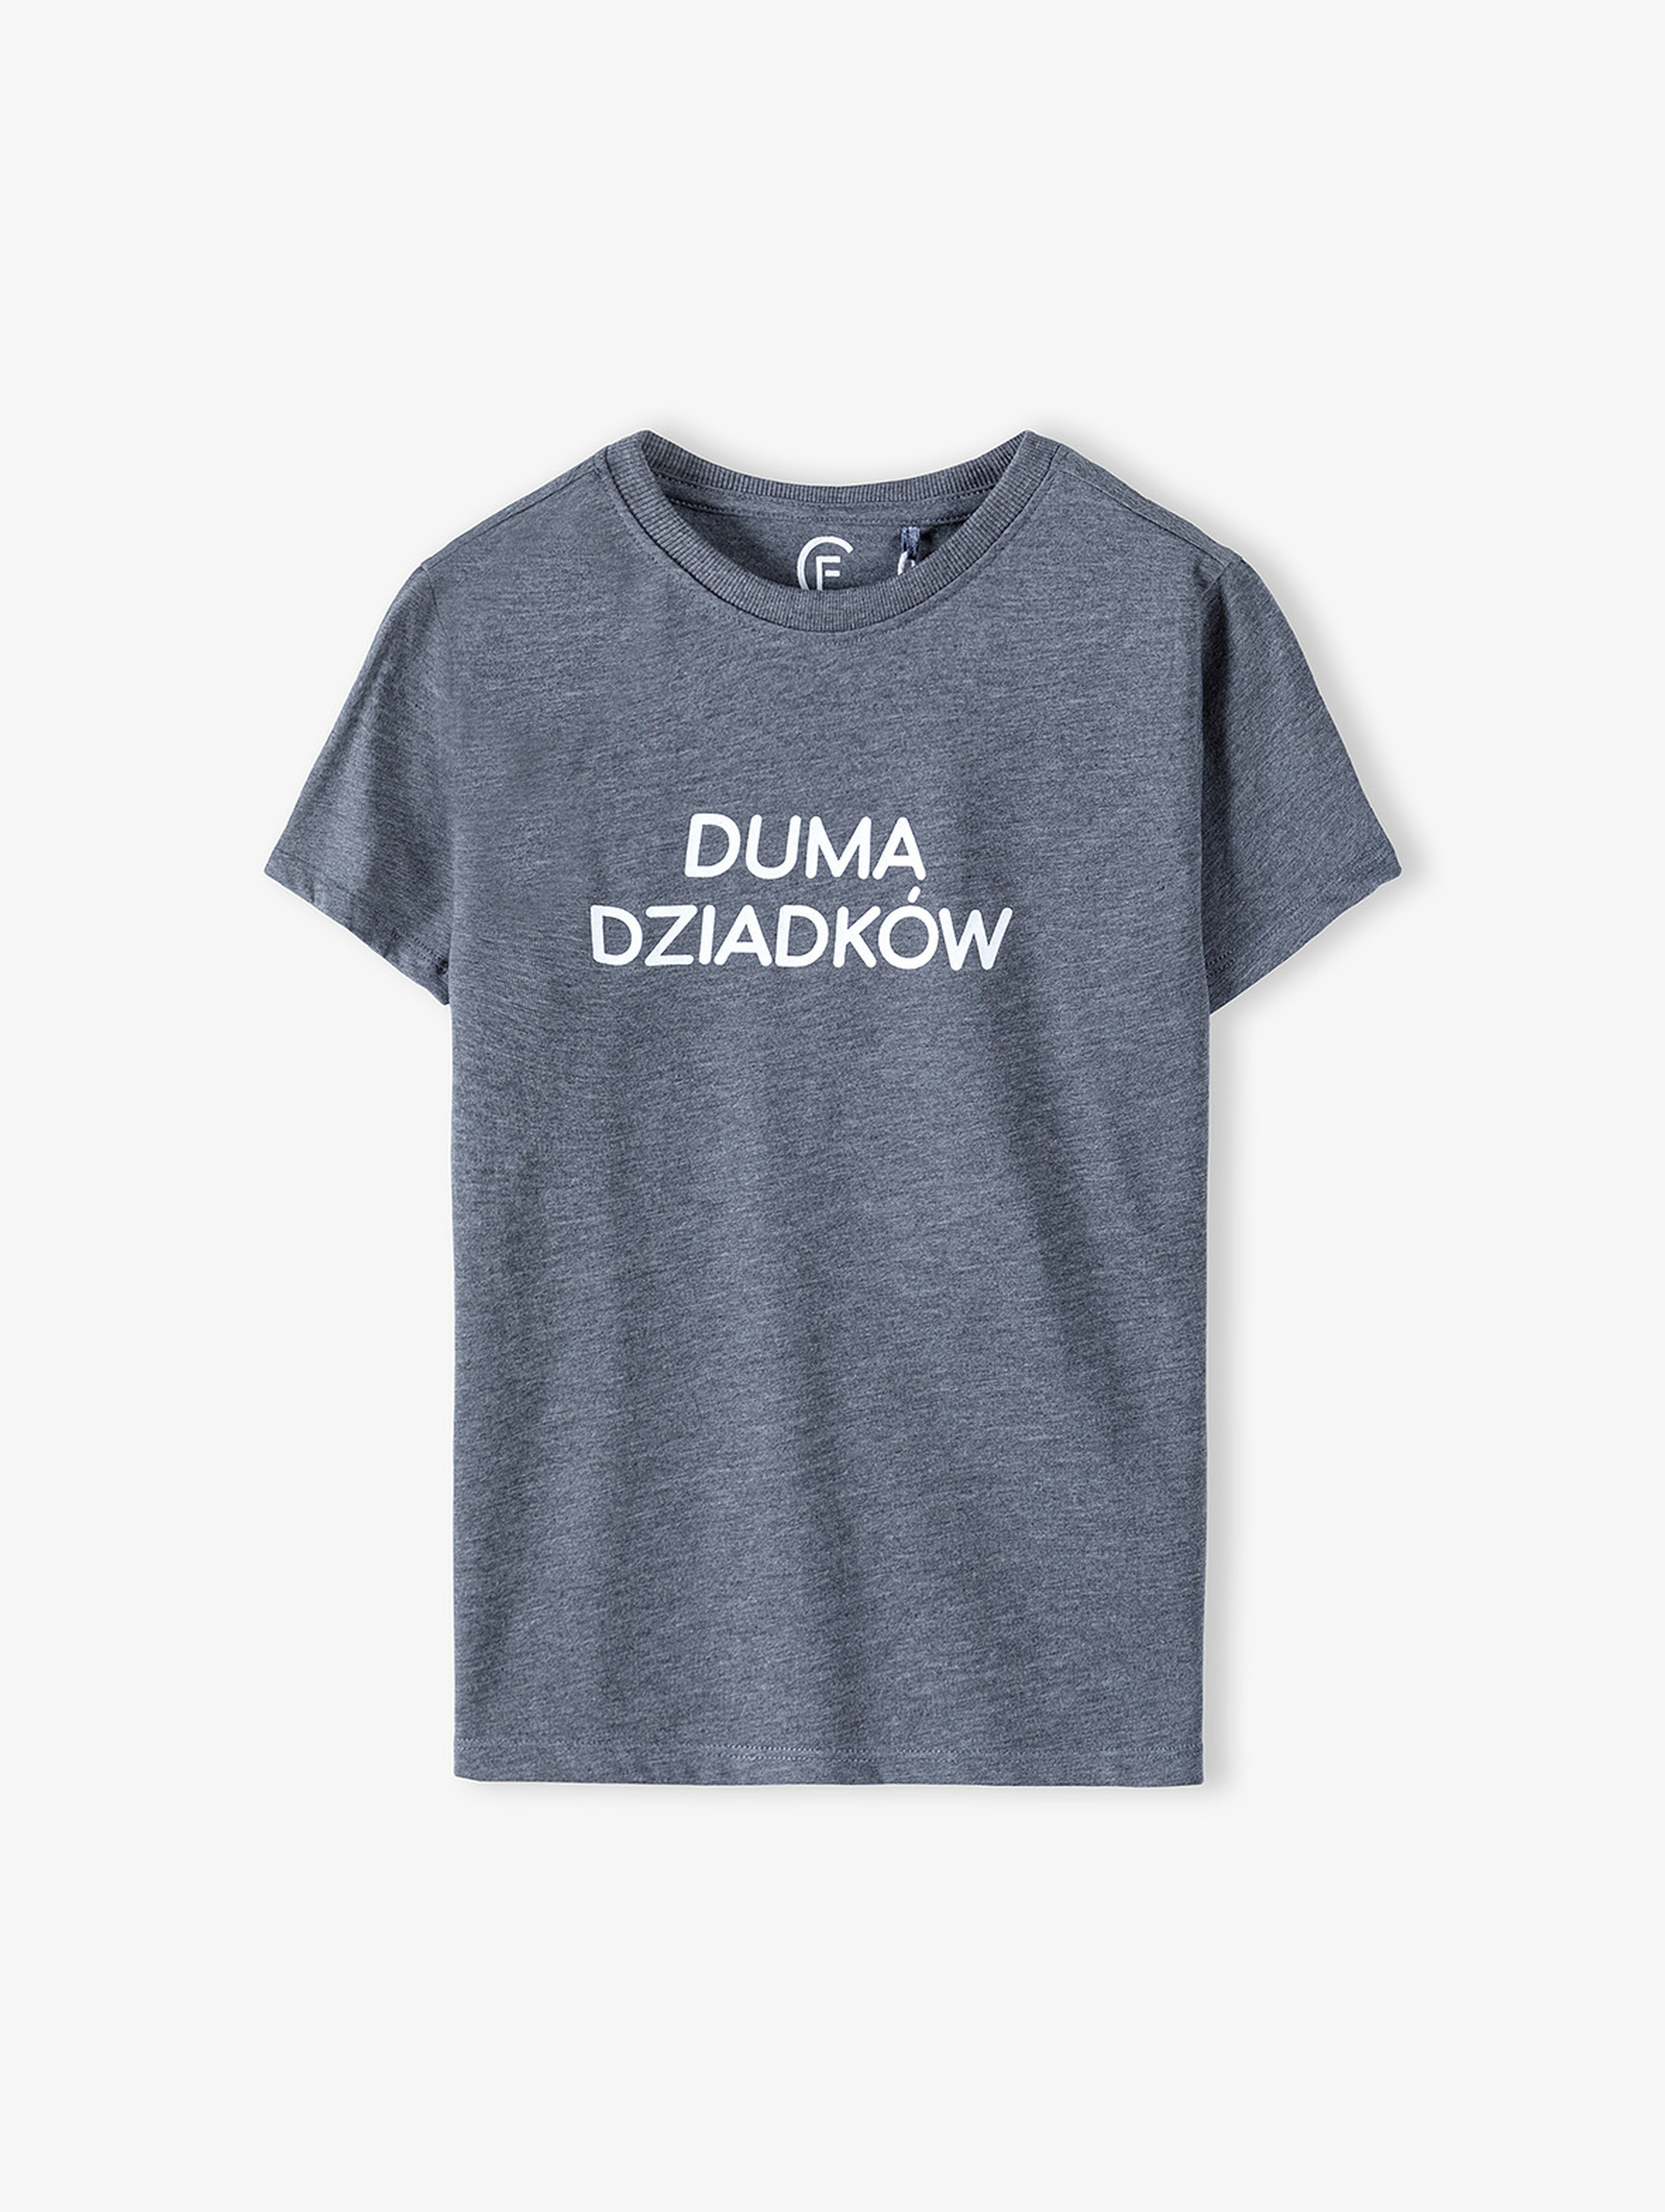 Szary t-shirt dla chłopca z napisem "Duma dziadków"